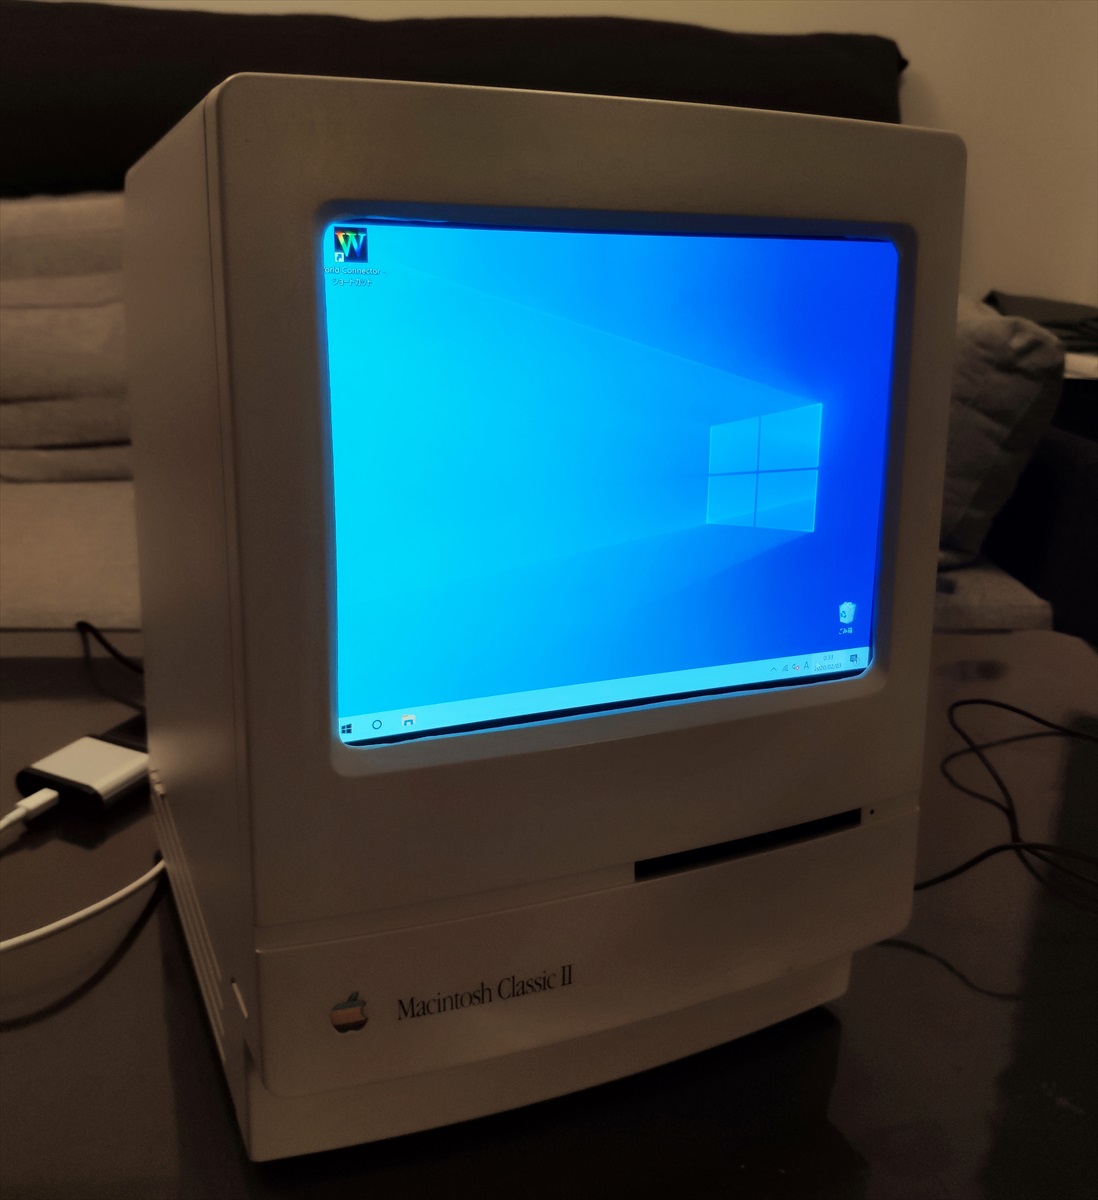 Macintosh Classic II カスタマイズ ジャンク扱い - デスクトップ型PC